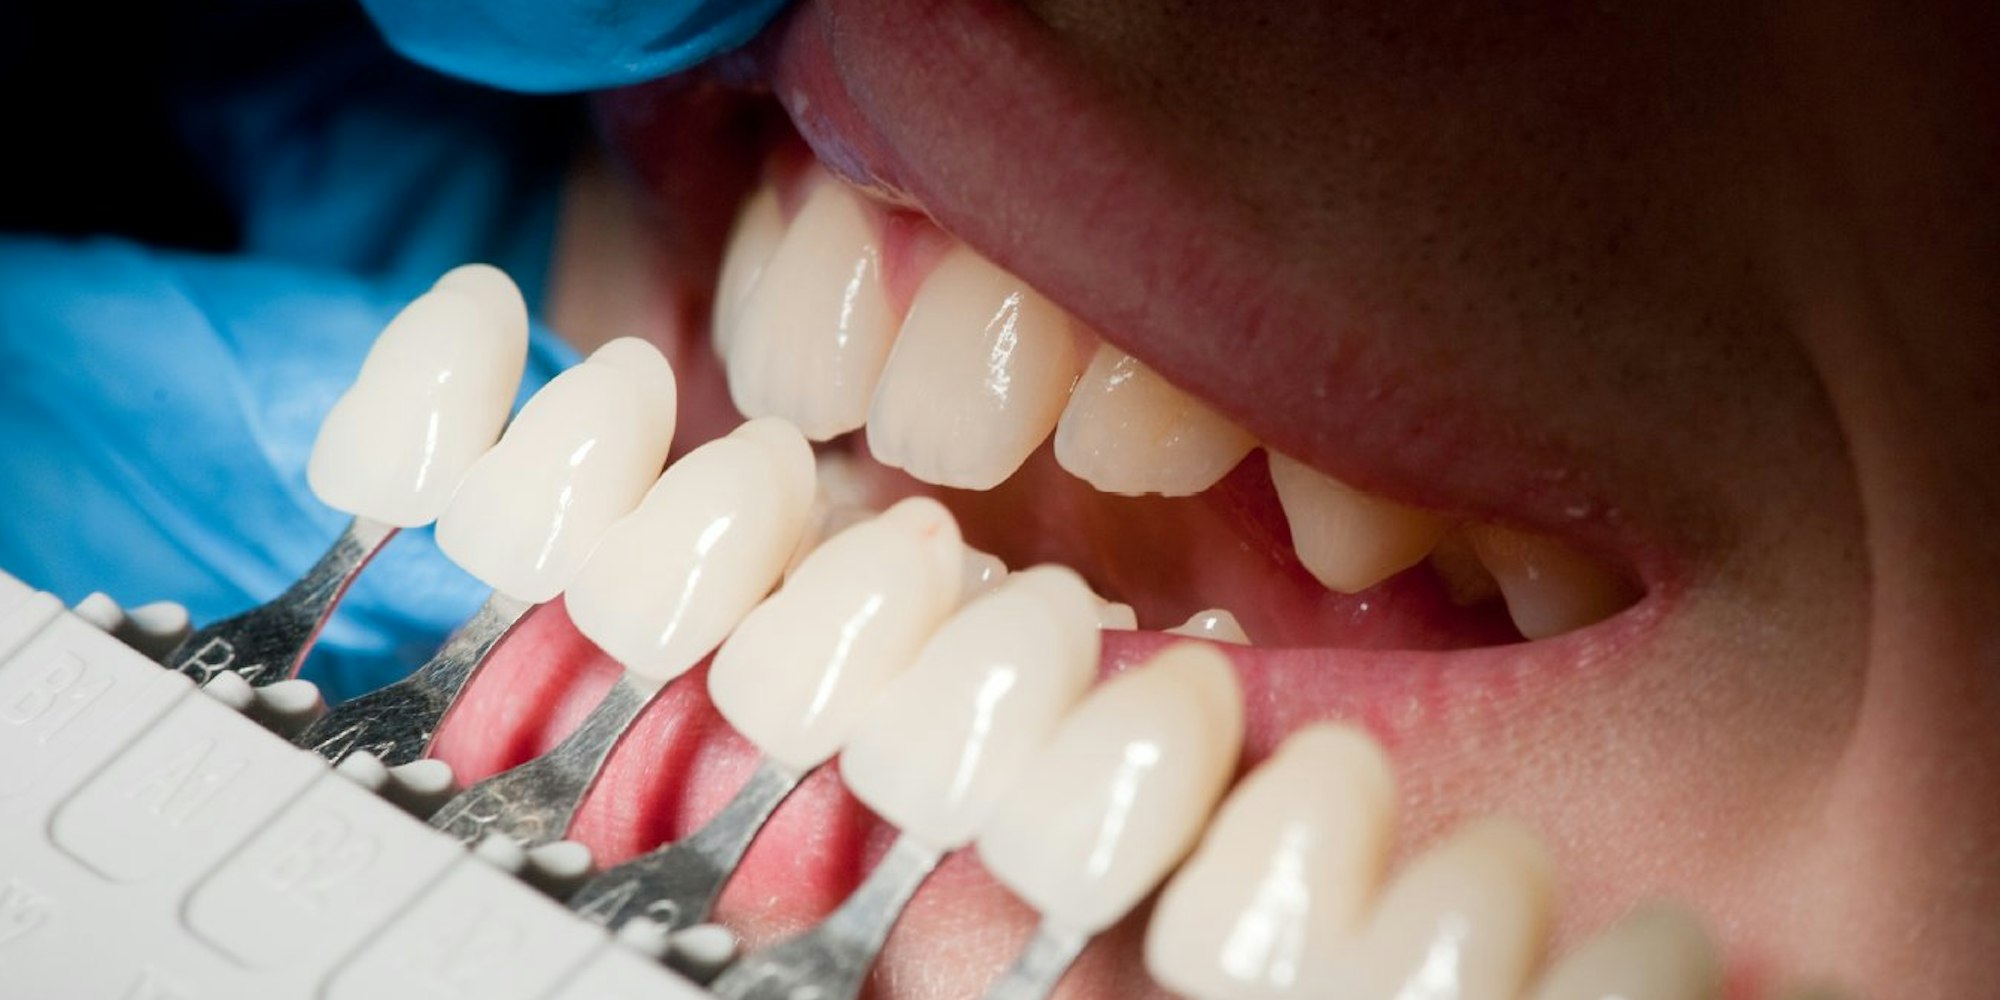 Was die Zahnpasta nicht schafft, kann ein Bleaching beim Zahnarzt wettmachen - mit Hilfe von Wasserstoffperoxid können die Zähne bis zu drei Farbstufen heller werden.